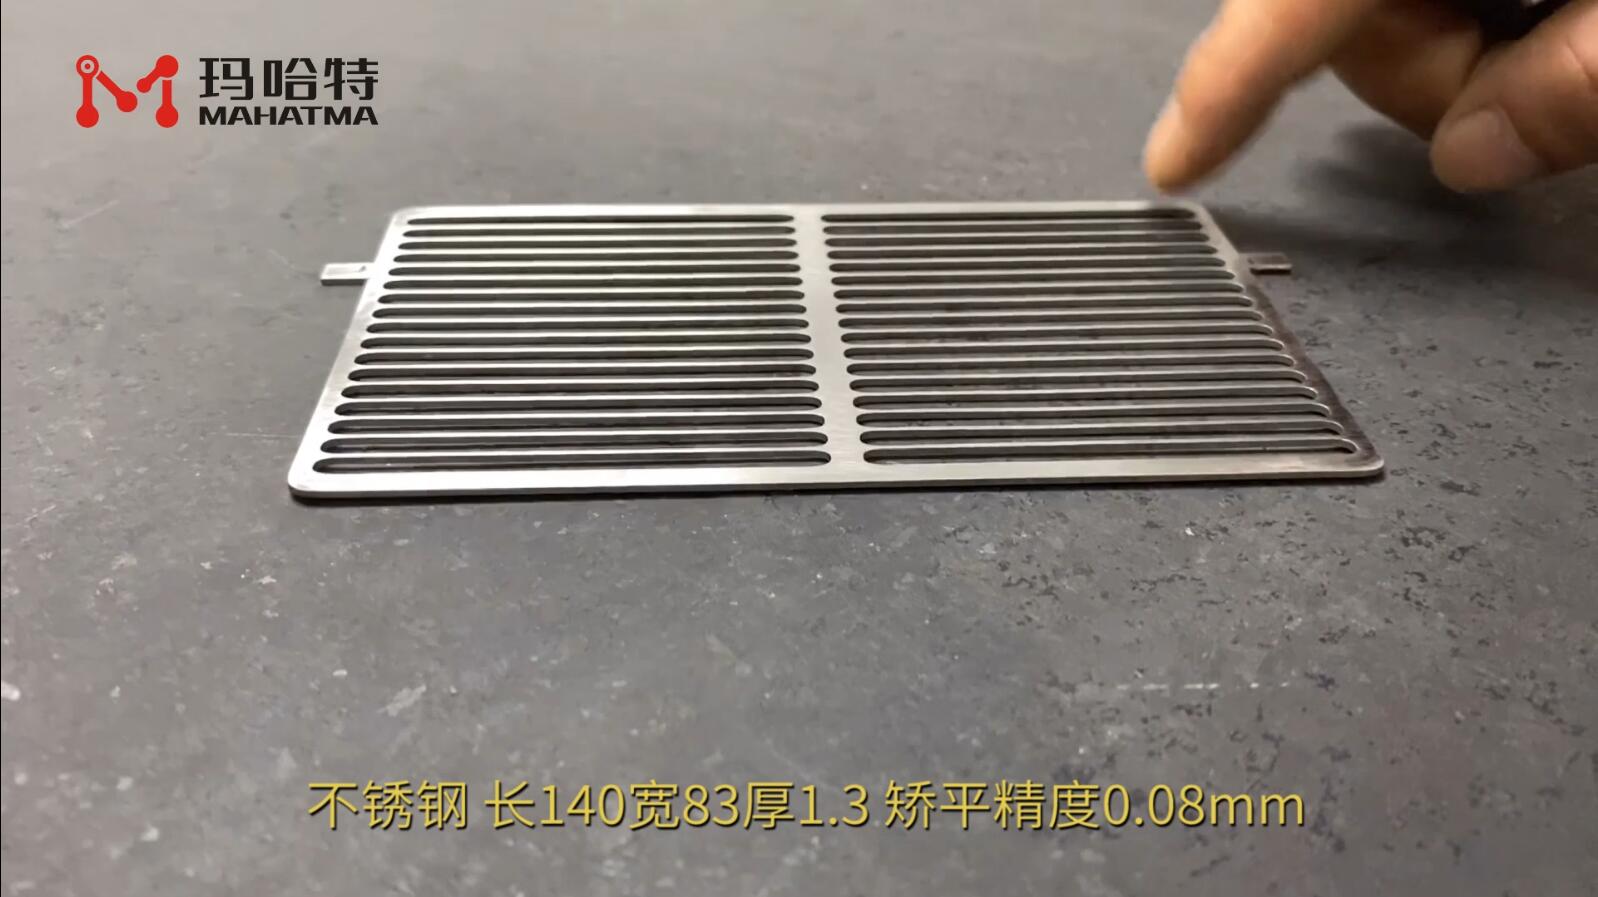 不锈钢网板 SLS15-300 长方形 长140宽83厚1.3mm